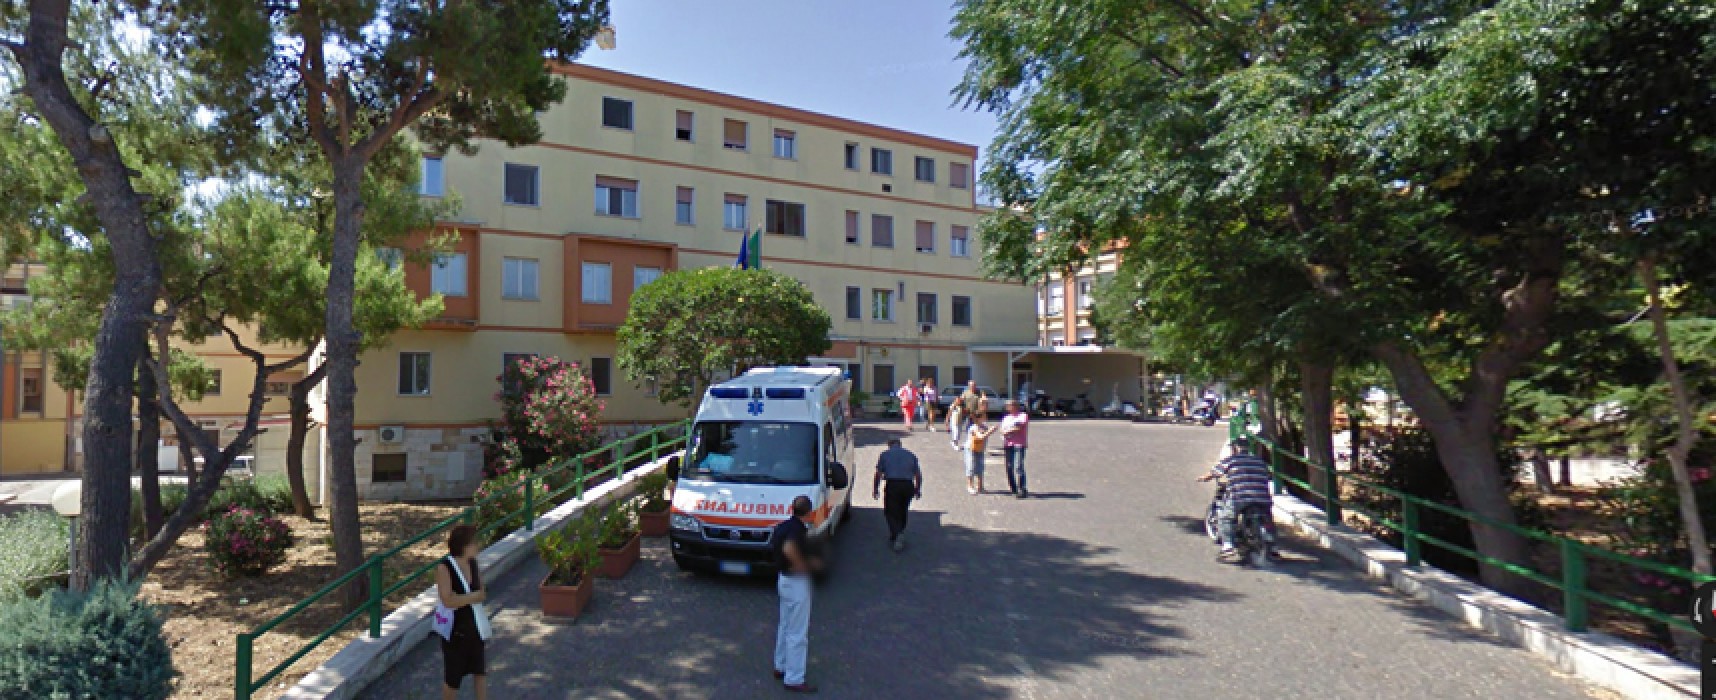 Spi Cgil Bat: “Investire maggiori risorse negli ospedali di Andria, Barletta e Bisceglie”